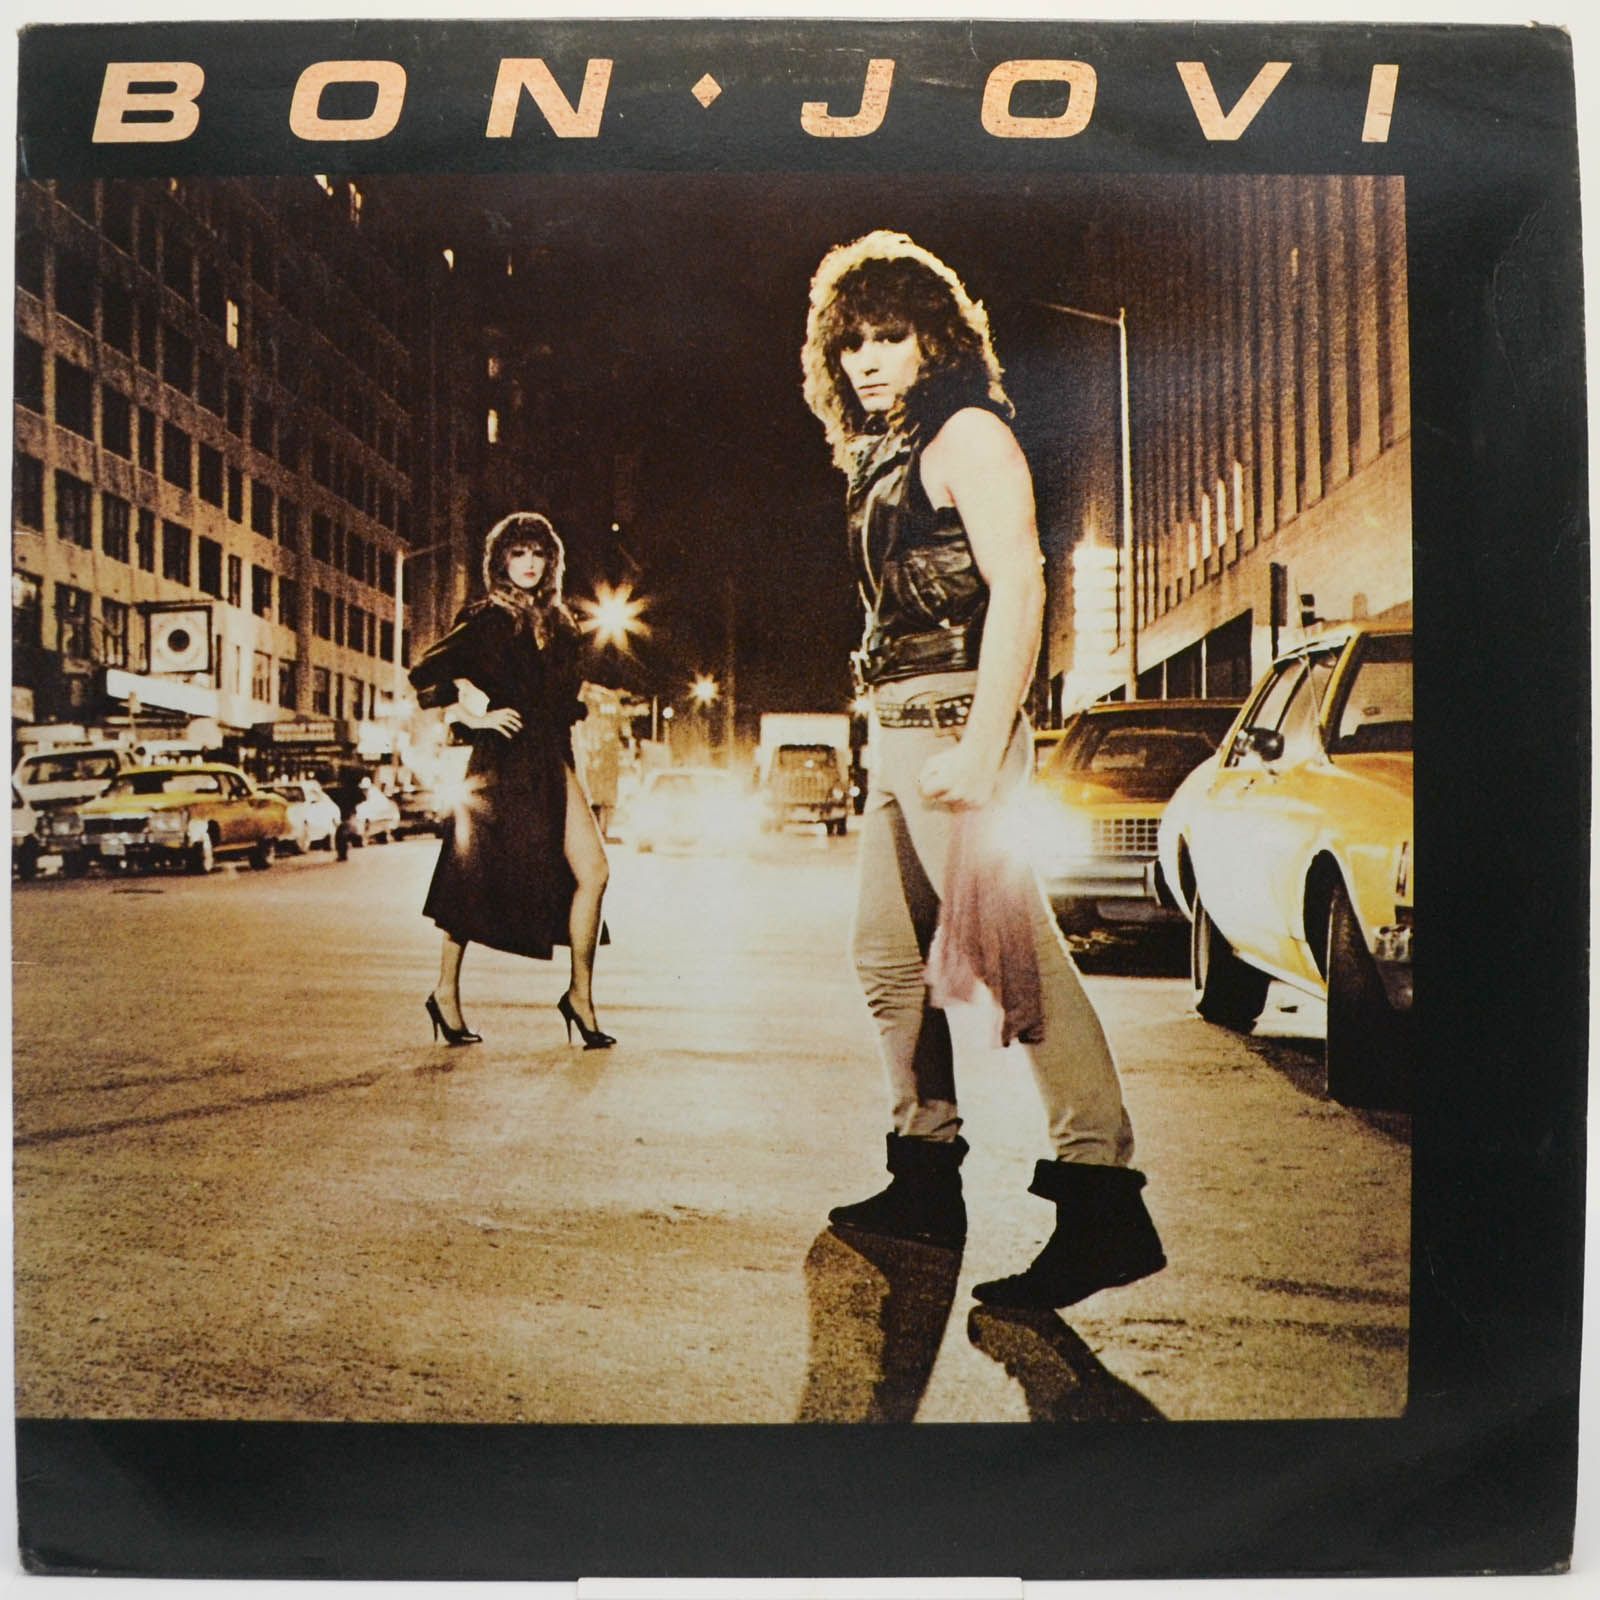 Bon Jovi — Bon Jovi (UK), 1984